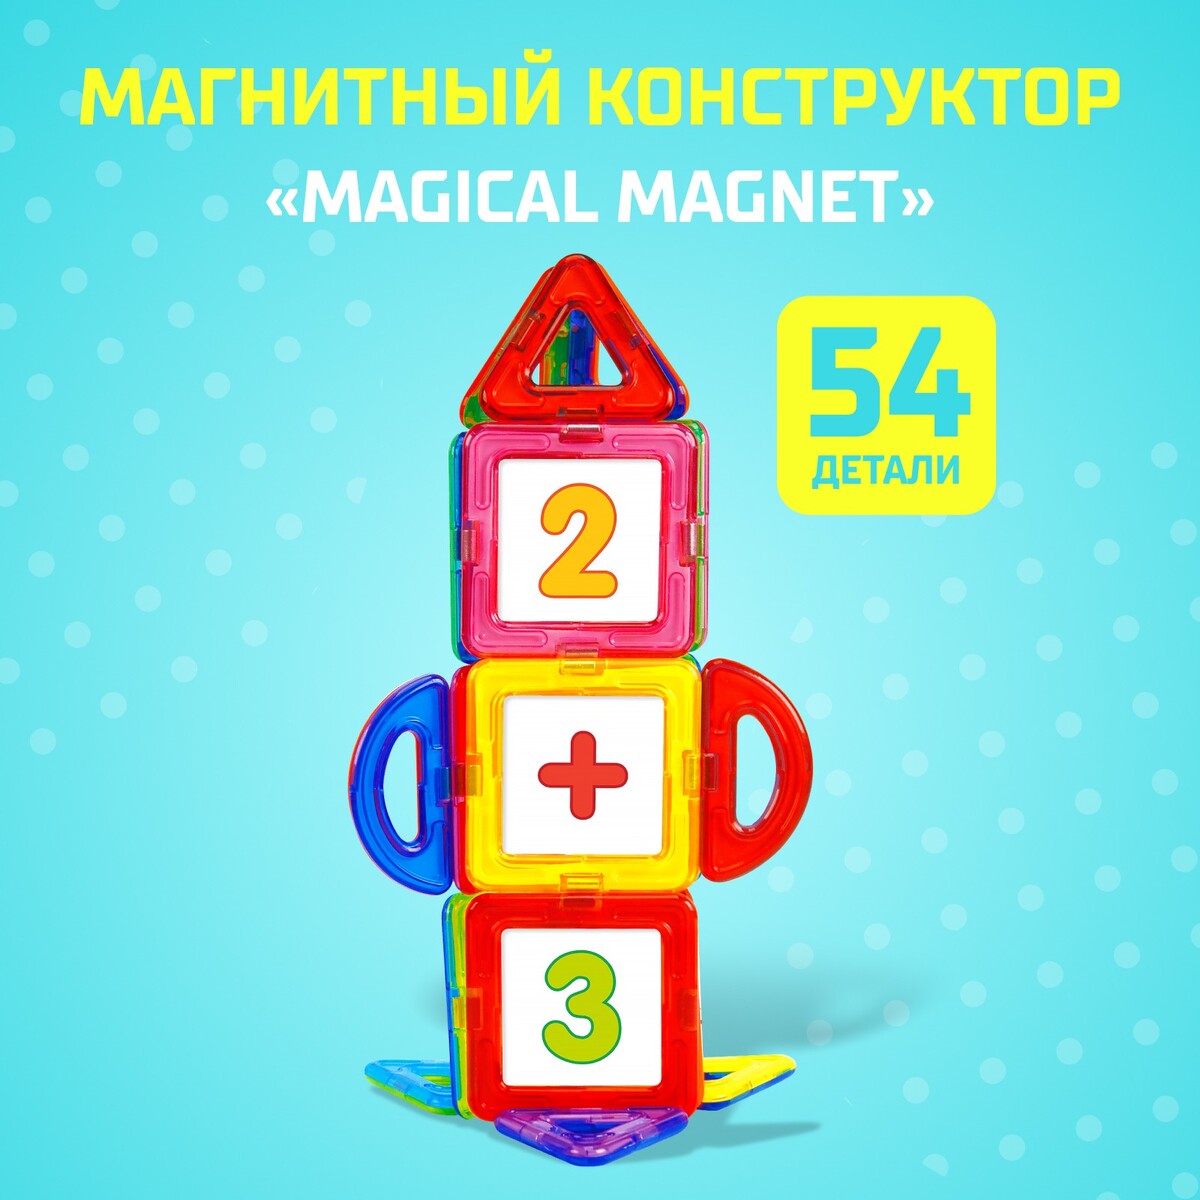 Магнитный конструктор magical magnet, 54 детали, детали матовые магнитный конструктор magical magnet 22 детали детали матовые